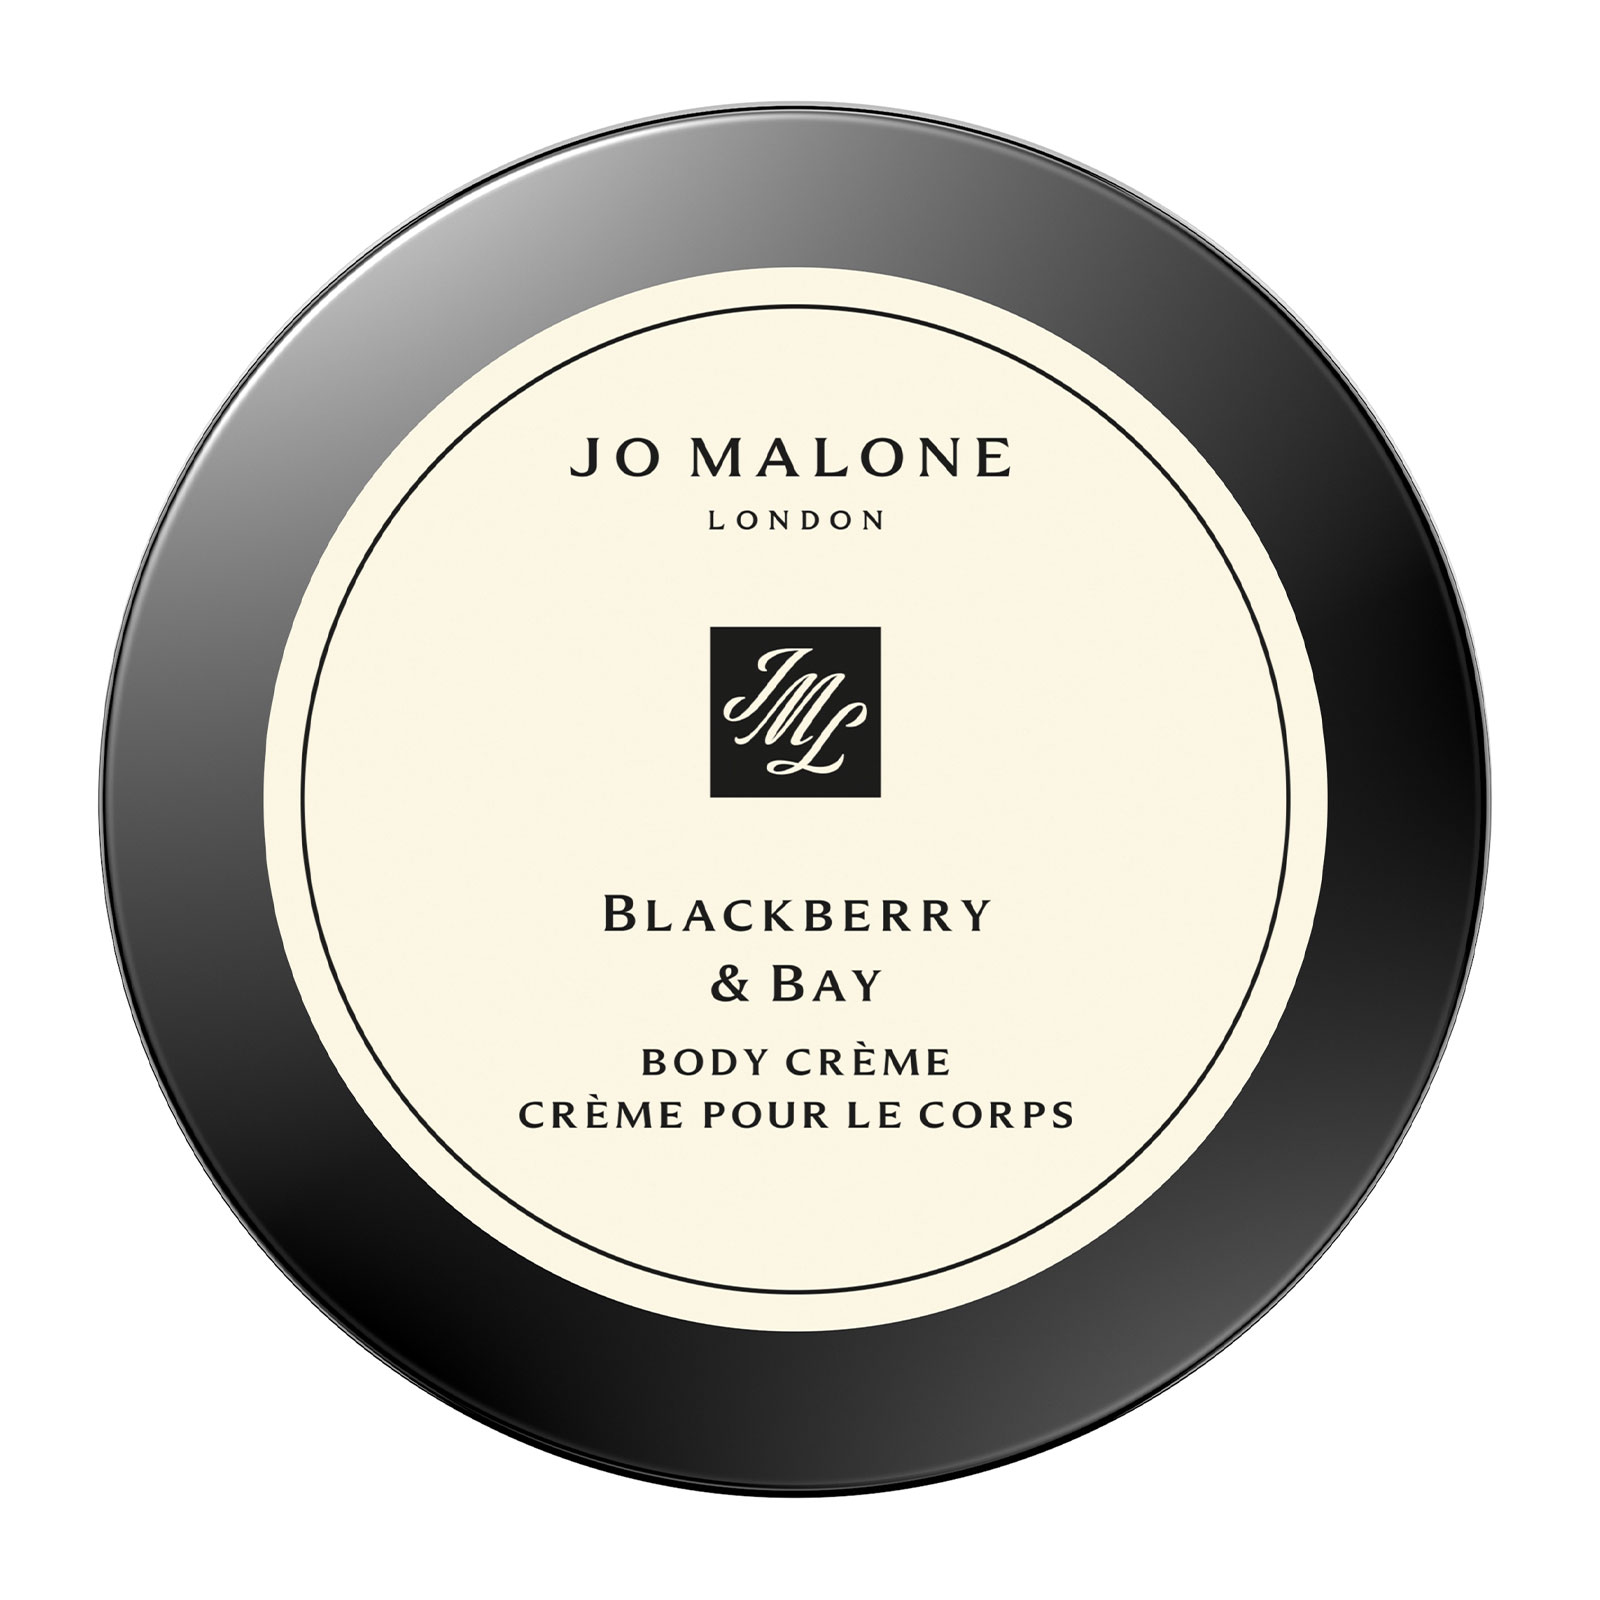 Jo Malone London Blackberry & Bay Body Creme 50Ml